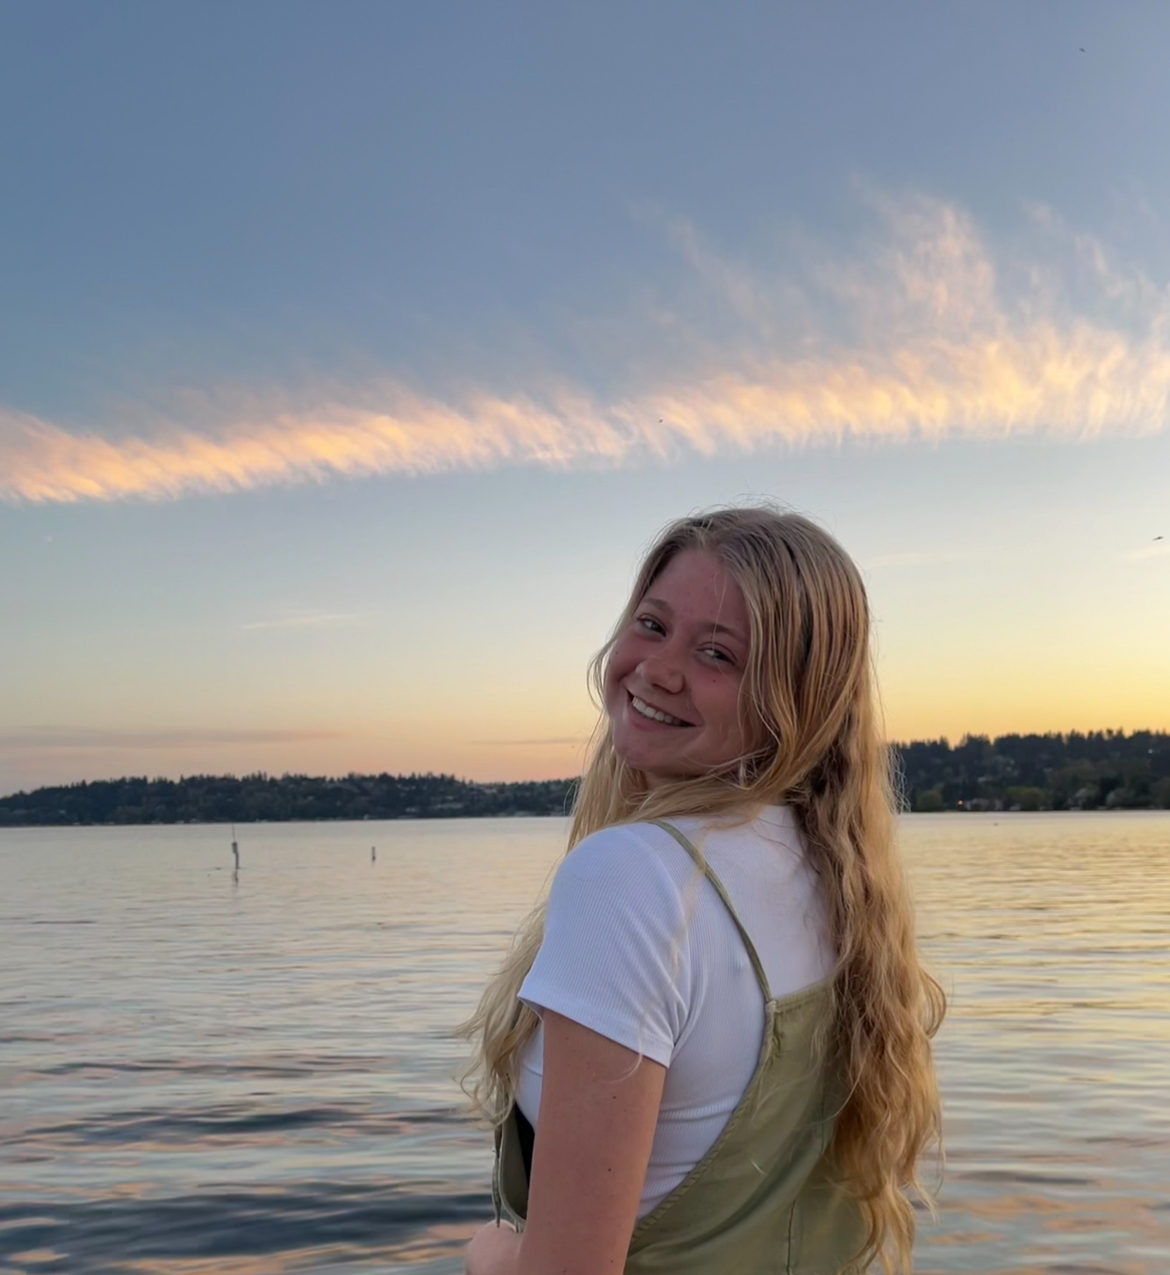 Rachel in Lake Washington at sunset.